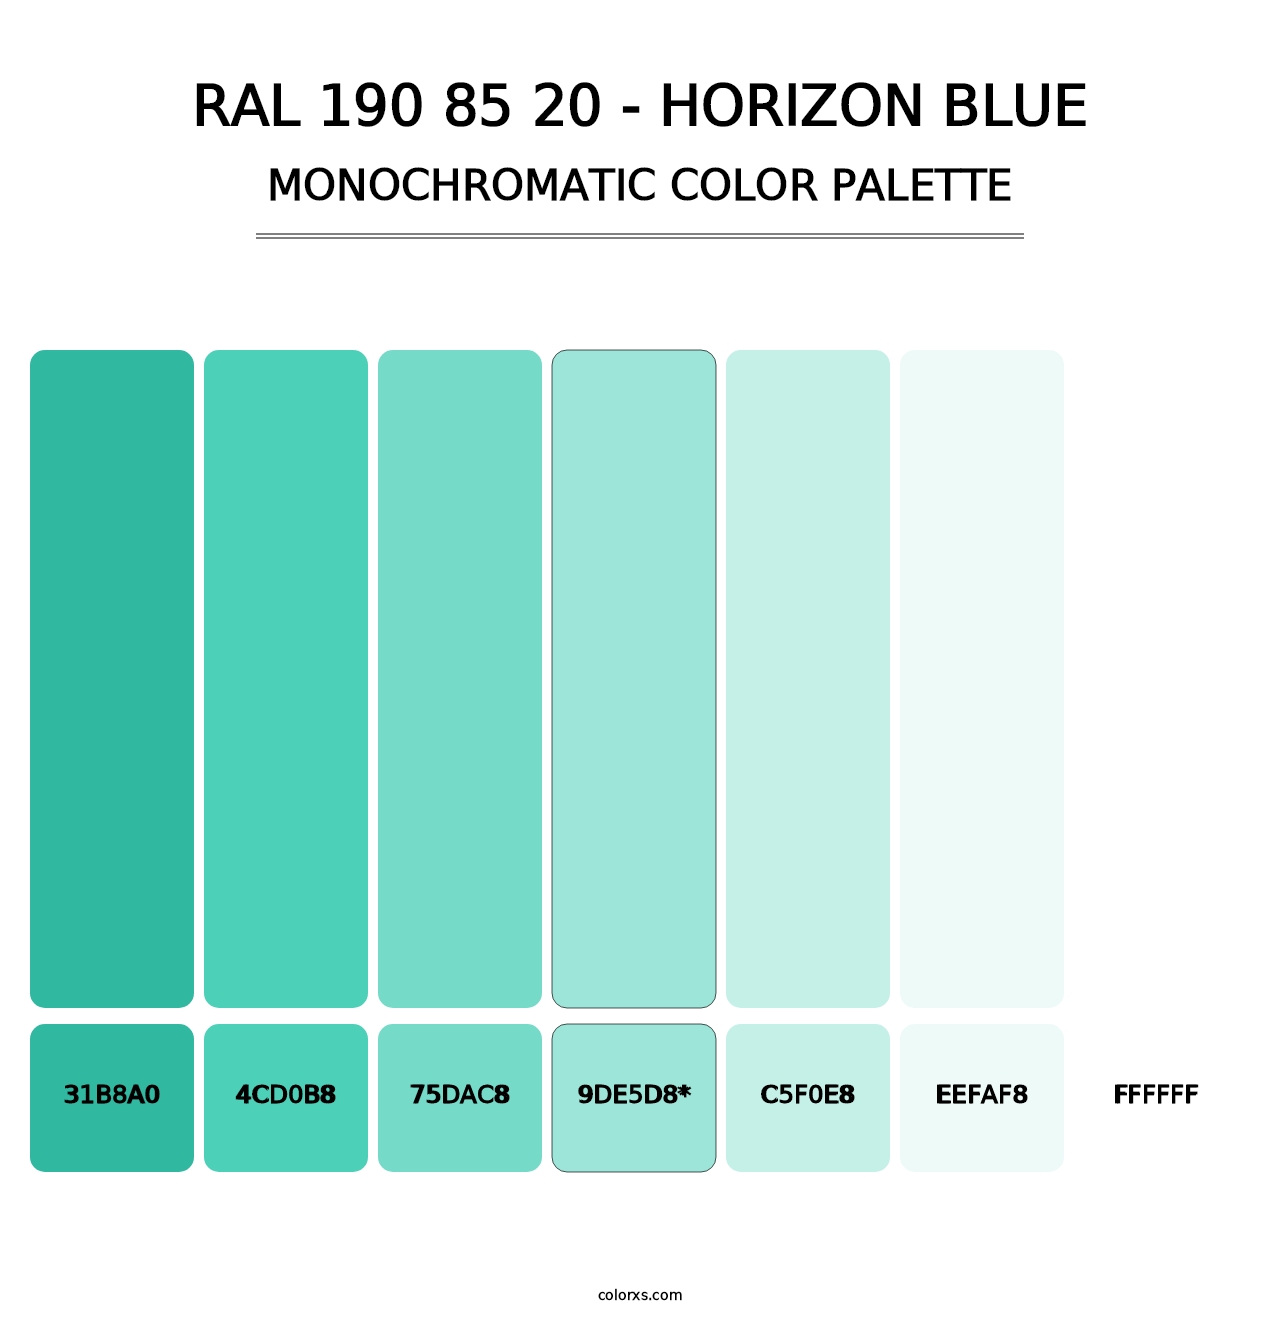 RAL 190 85 20 - Horizon Blue - Monochromatic Color Palette